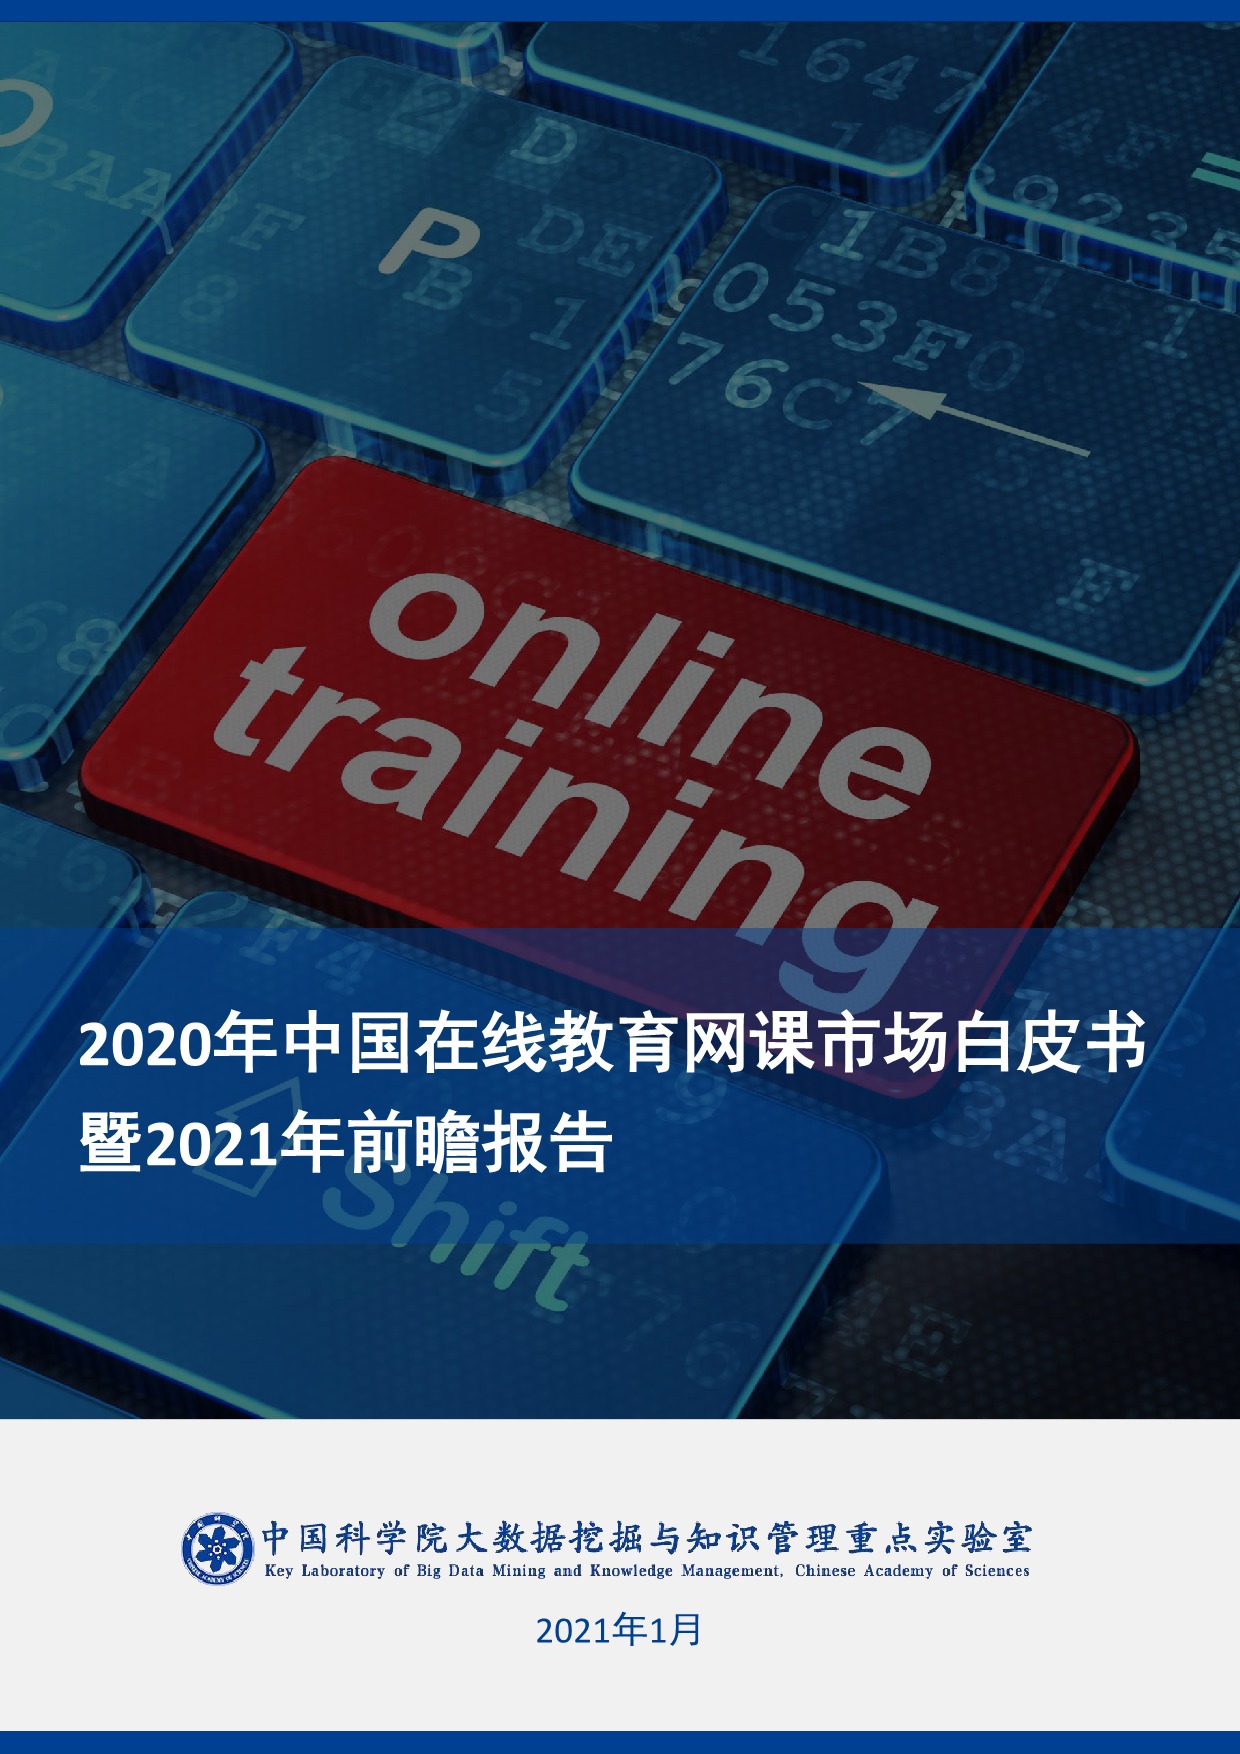 2020年中国在线教育网课市场白皮书暨2021年前瞻报告-中国科学院